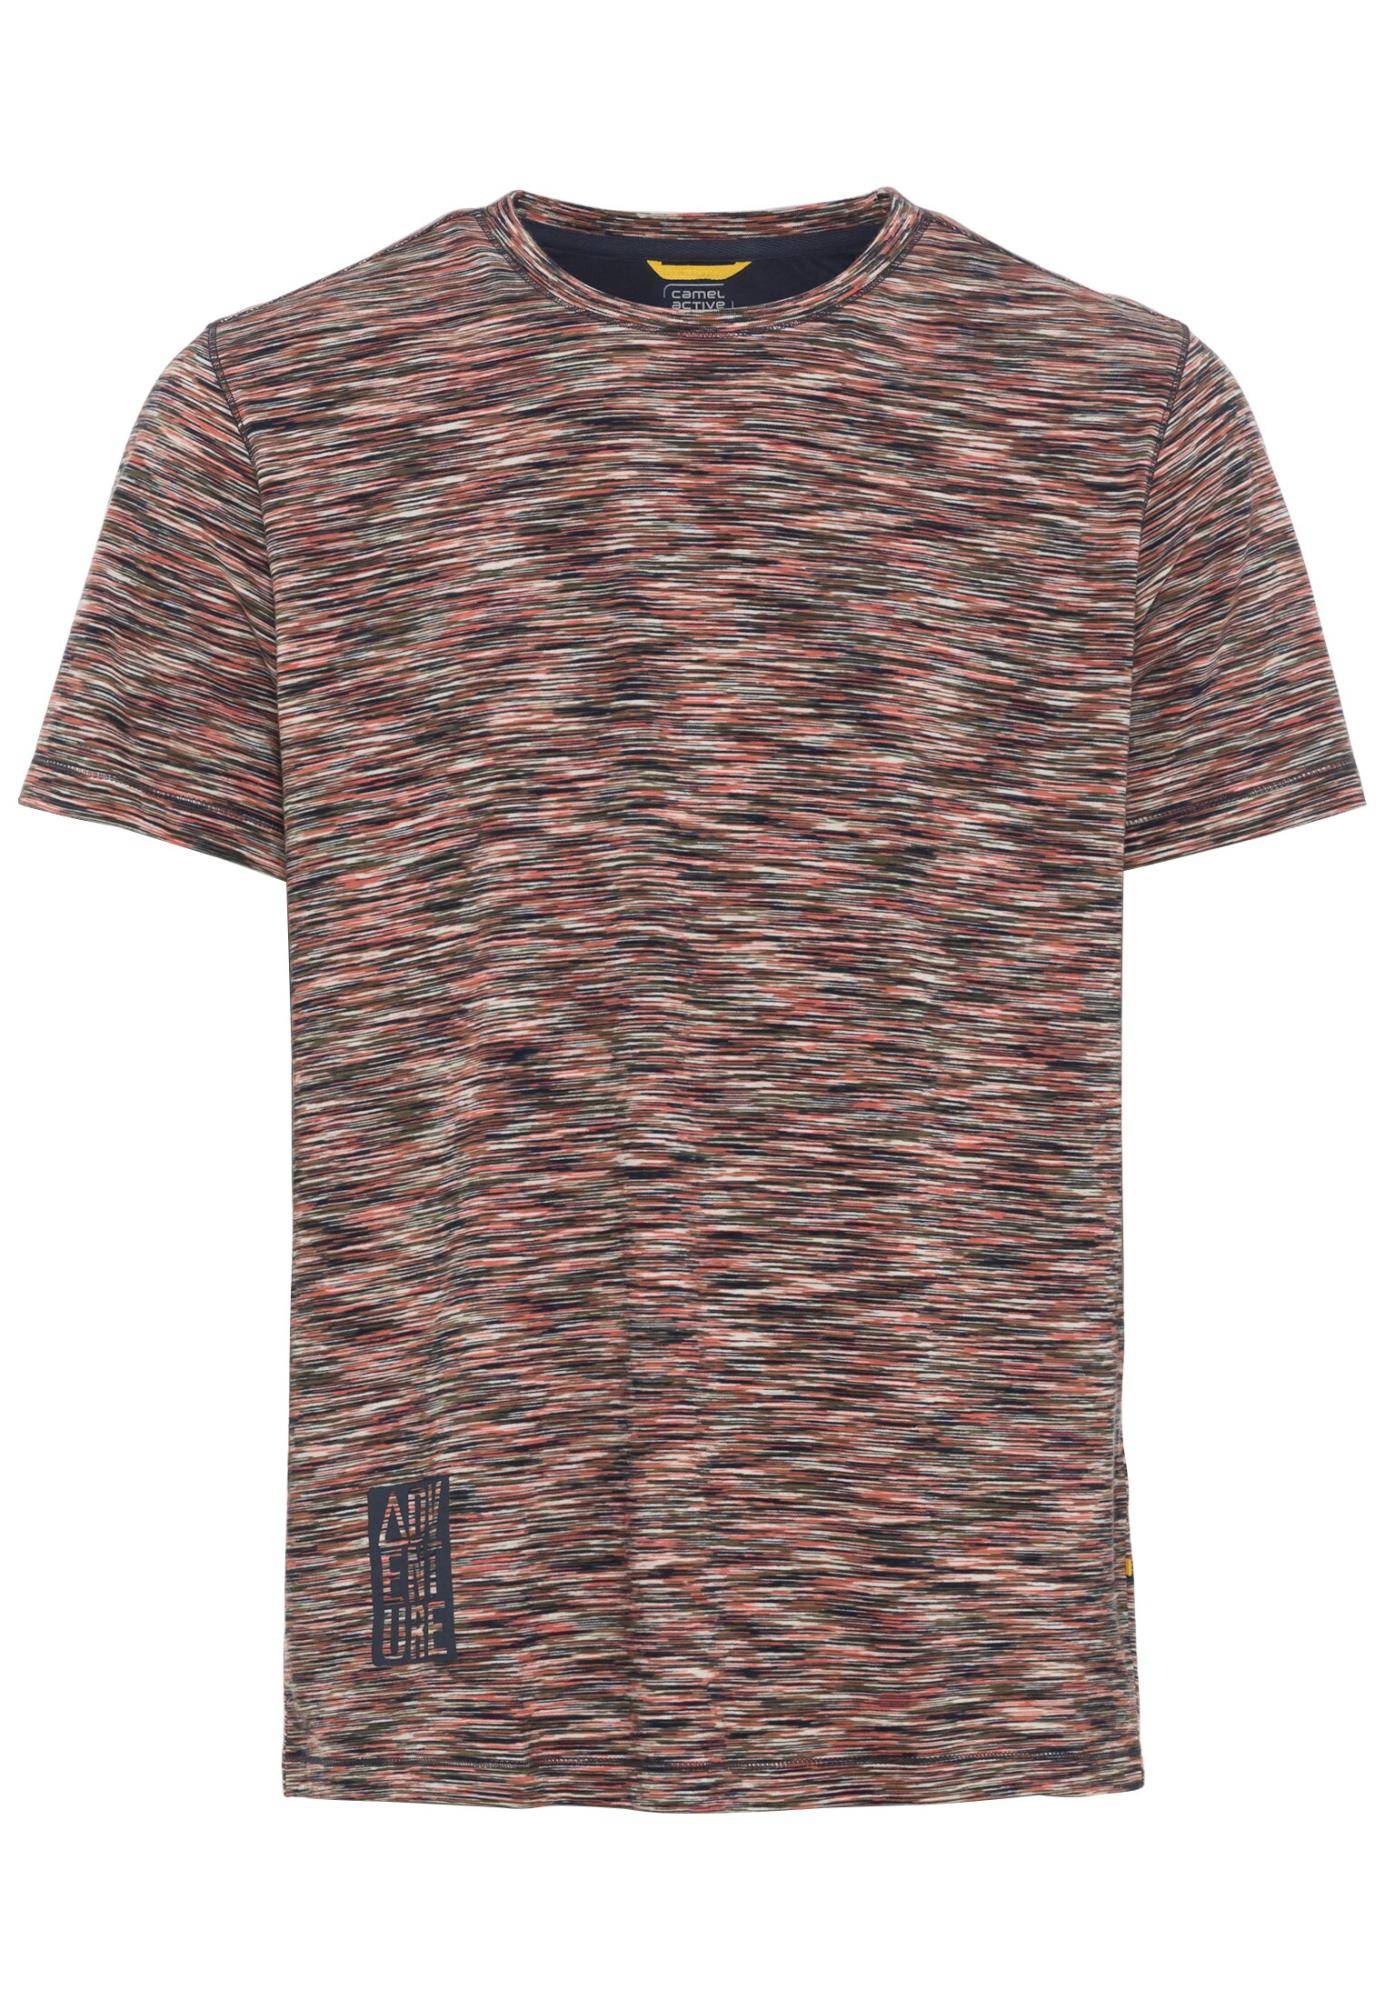 Мужская футболка Camel Active, коралловая, цвет коралловый, размер 50 - фото 1